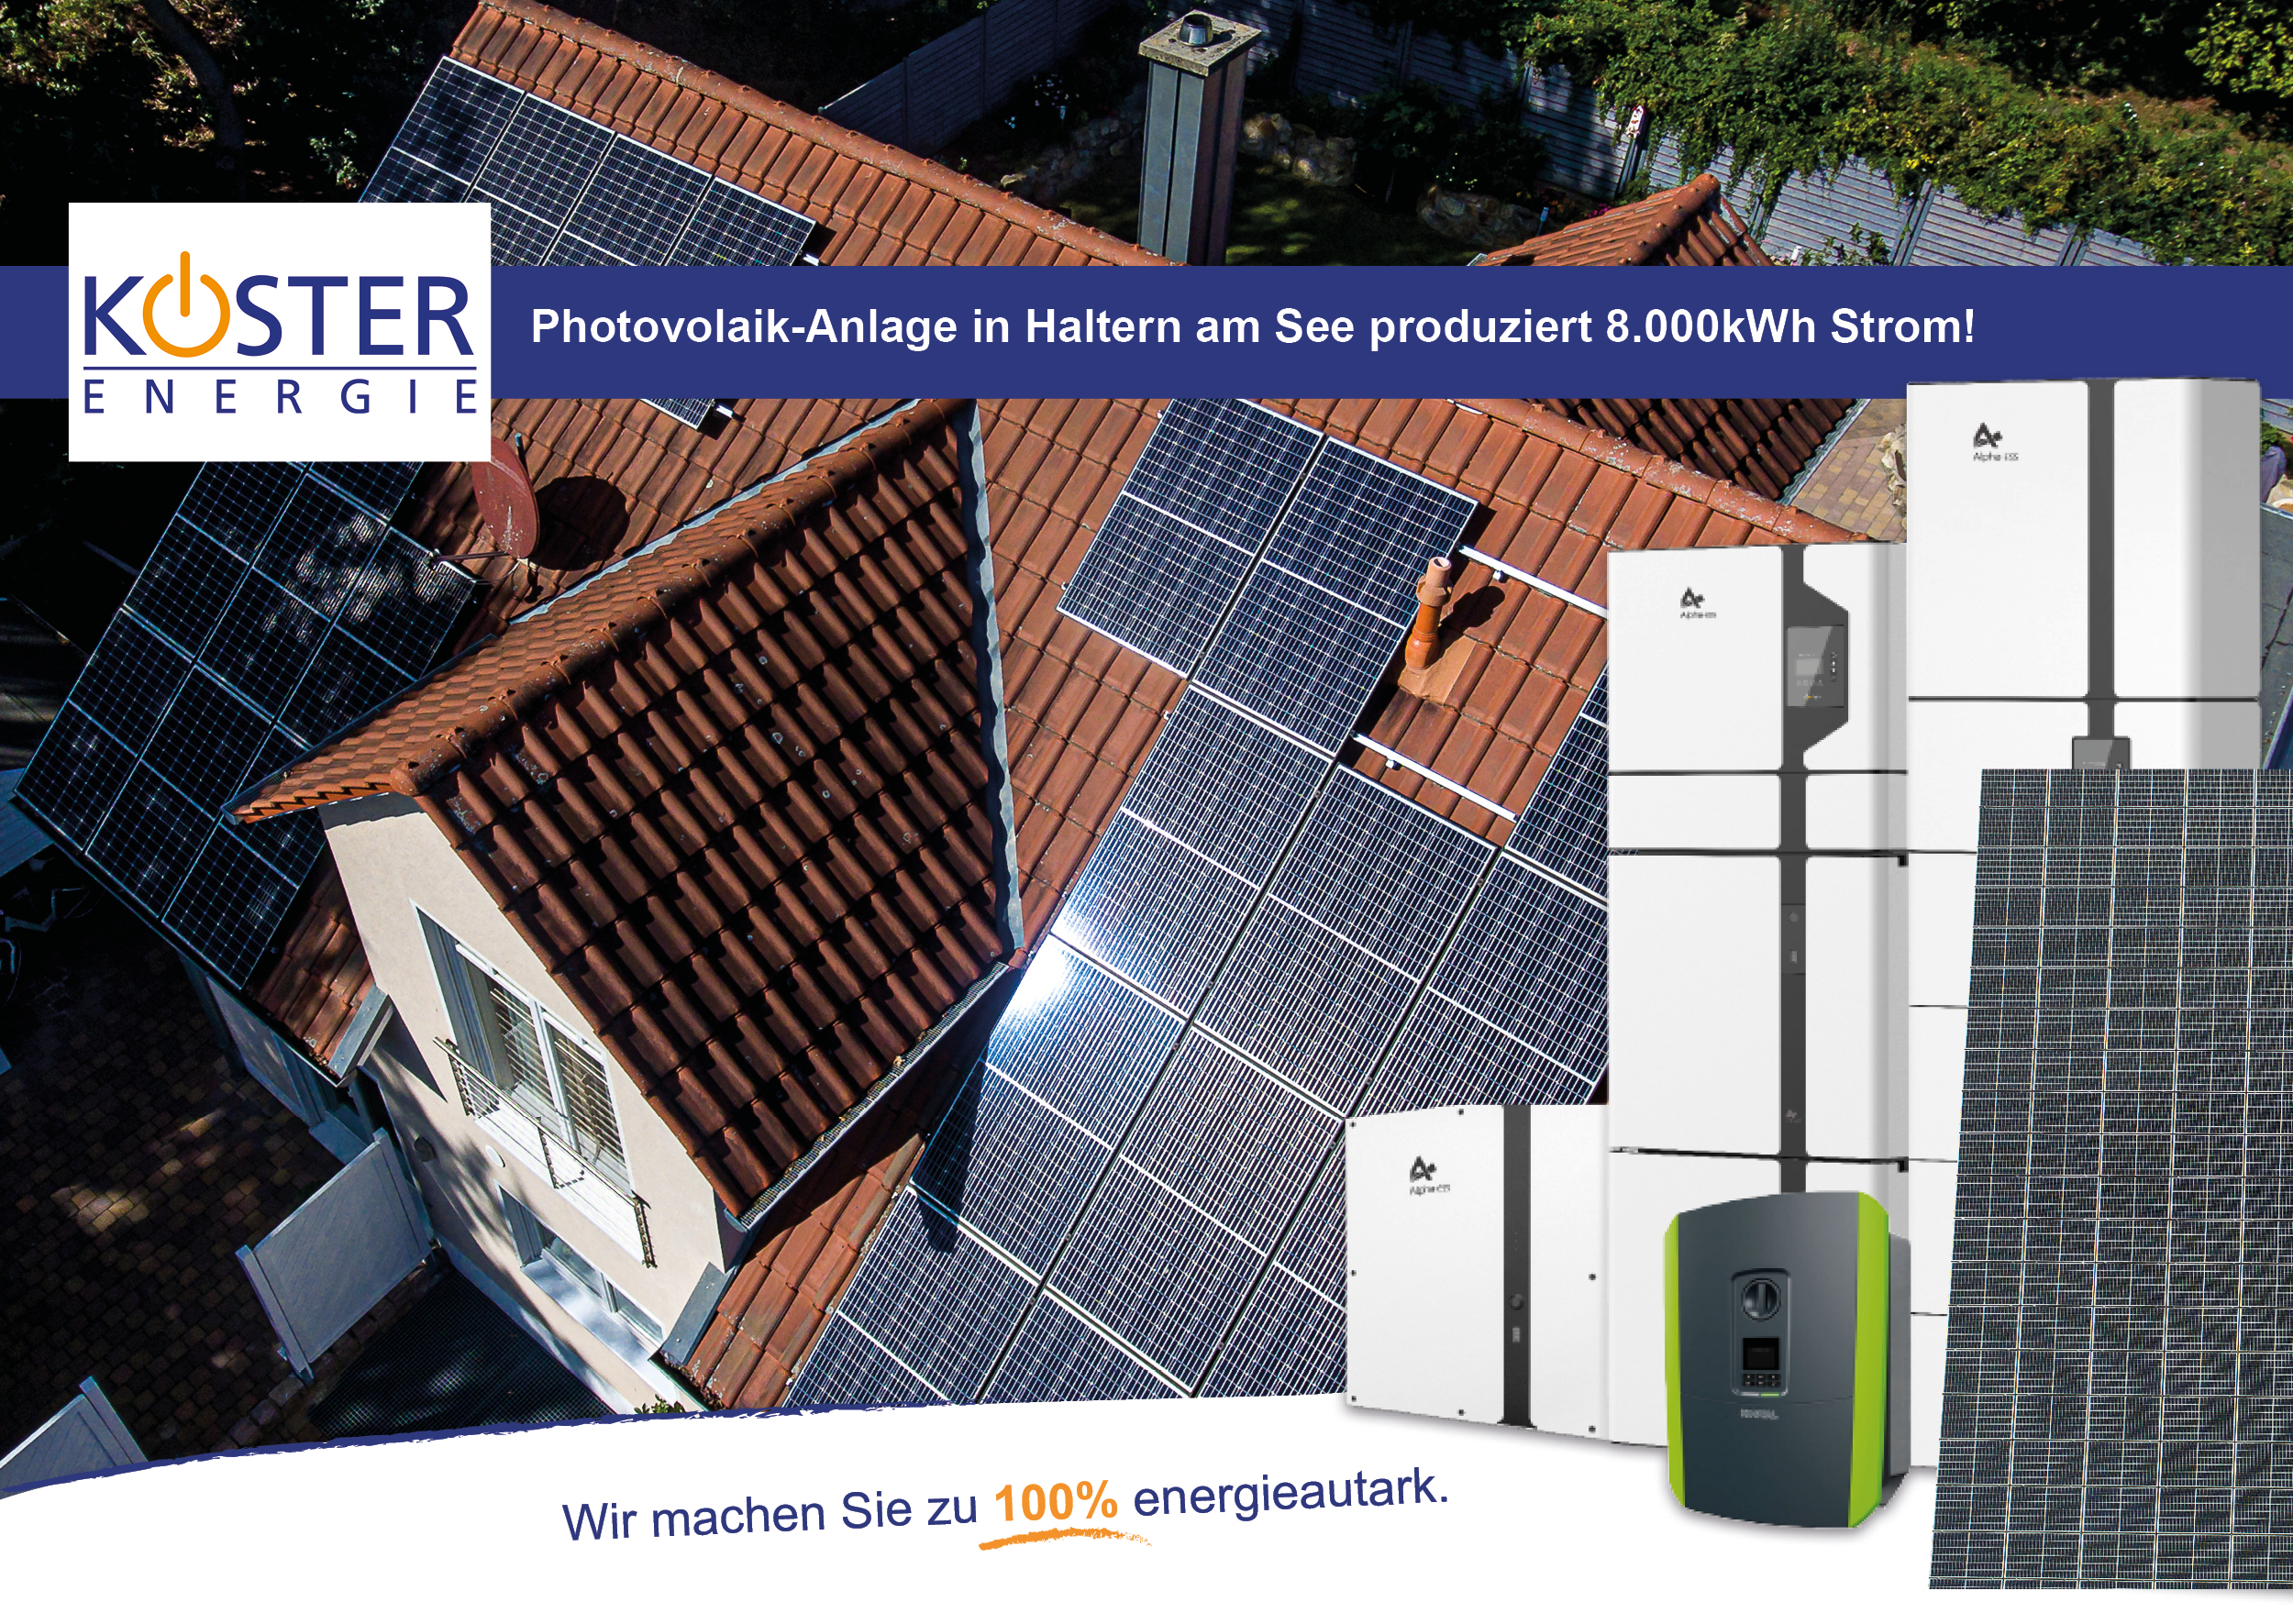 Photovoltaik-Anlage in Haltern am See produziert 8000kWh Strom!